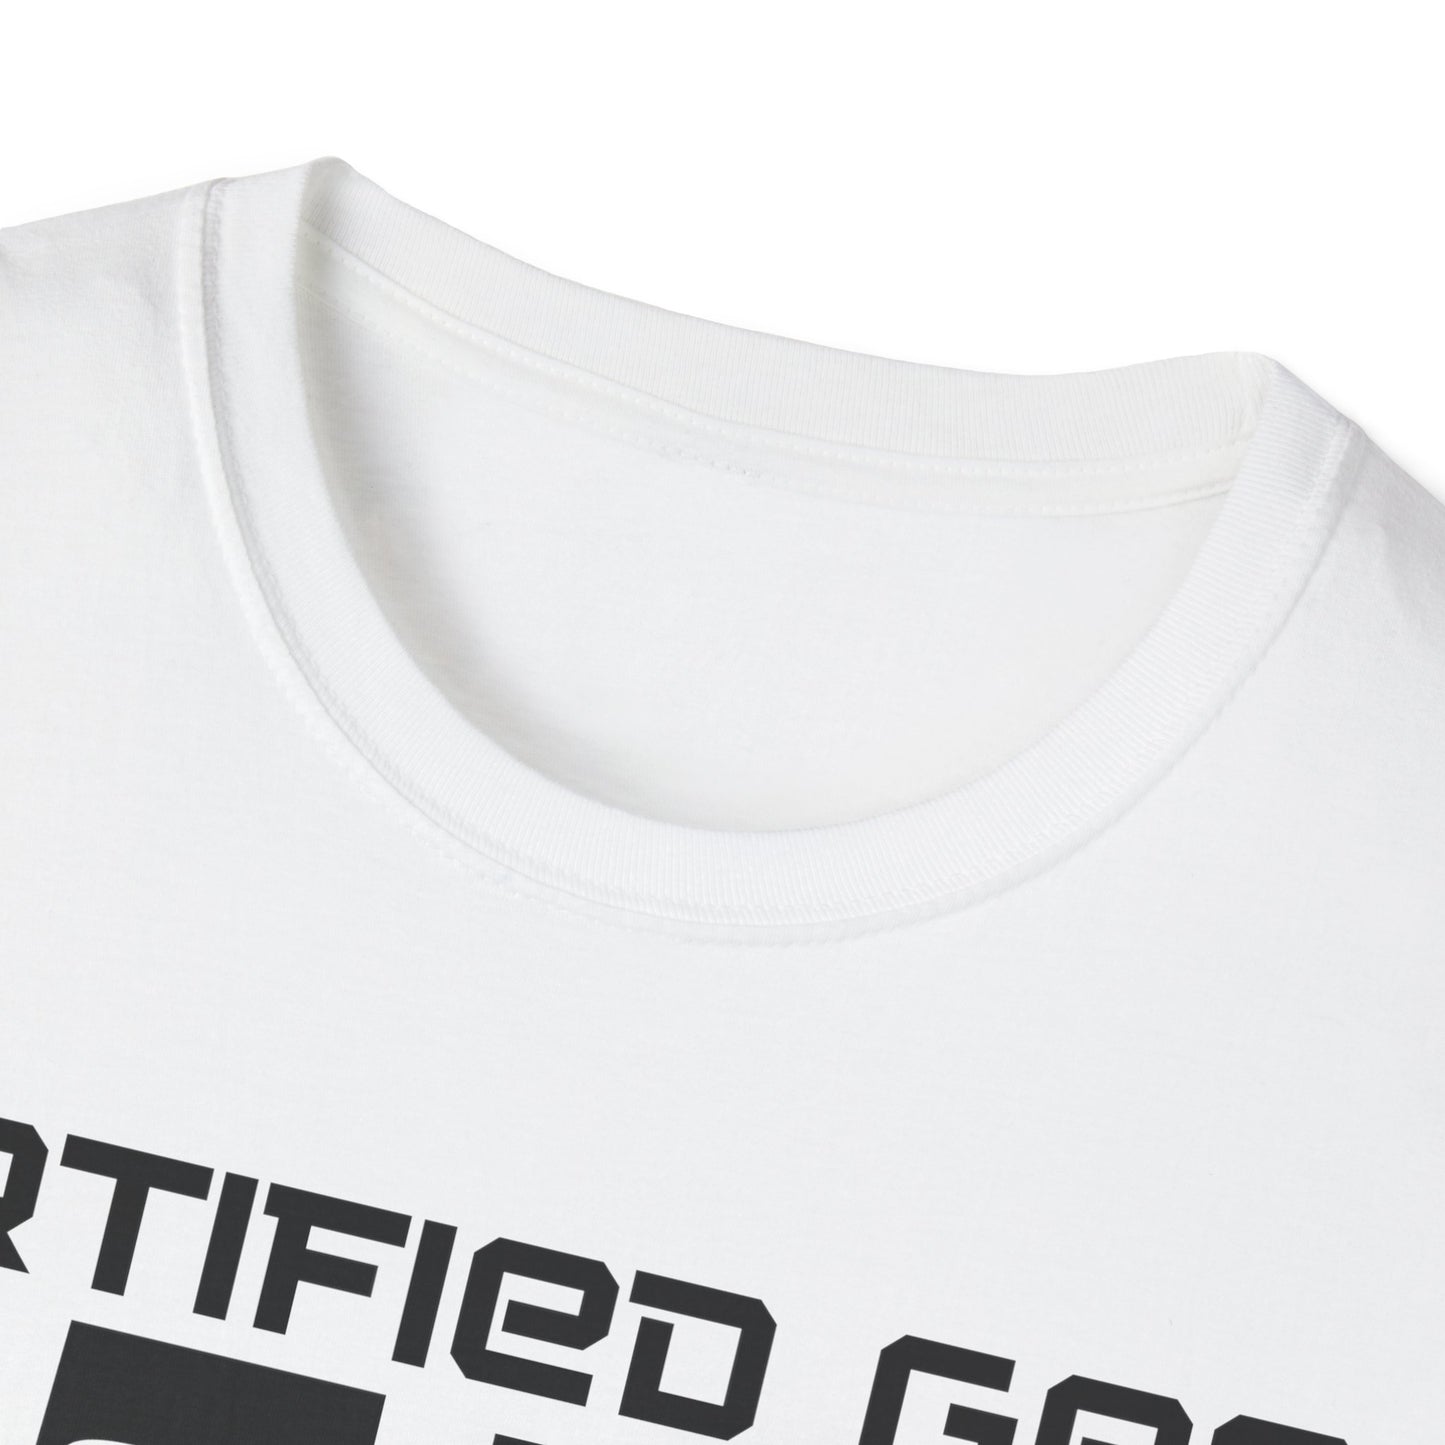 Certified Geek WAP Black Font Unisex Softstyle T-Shirt